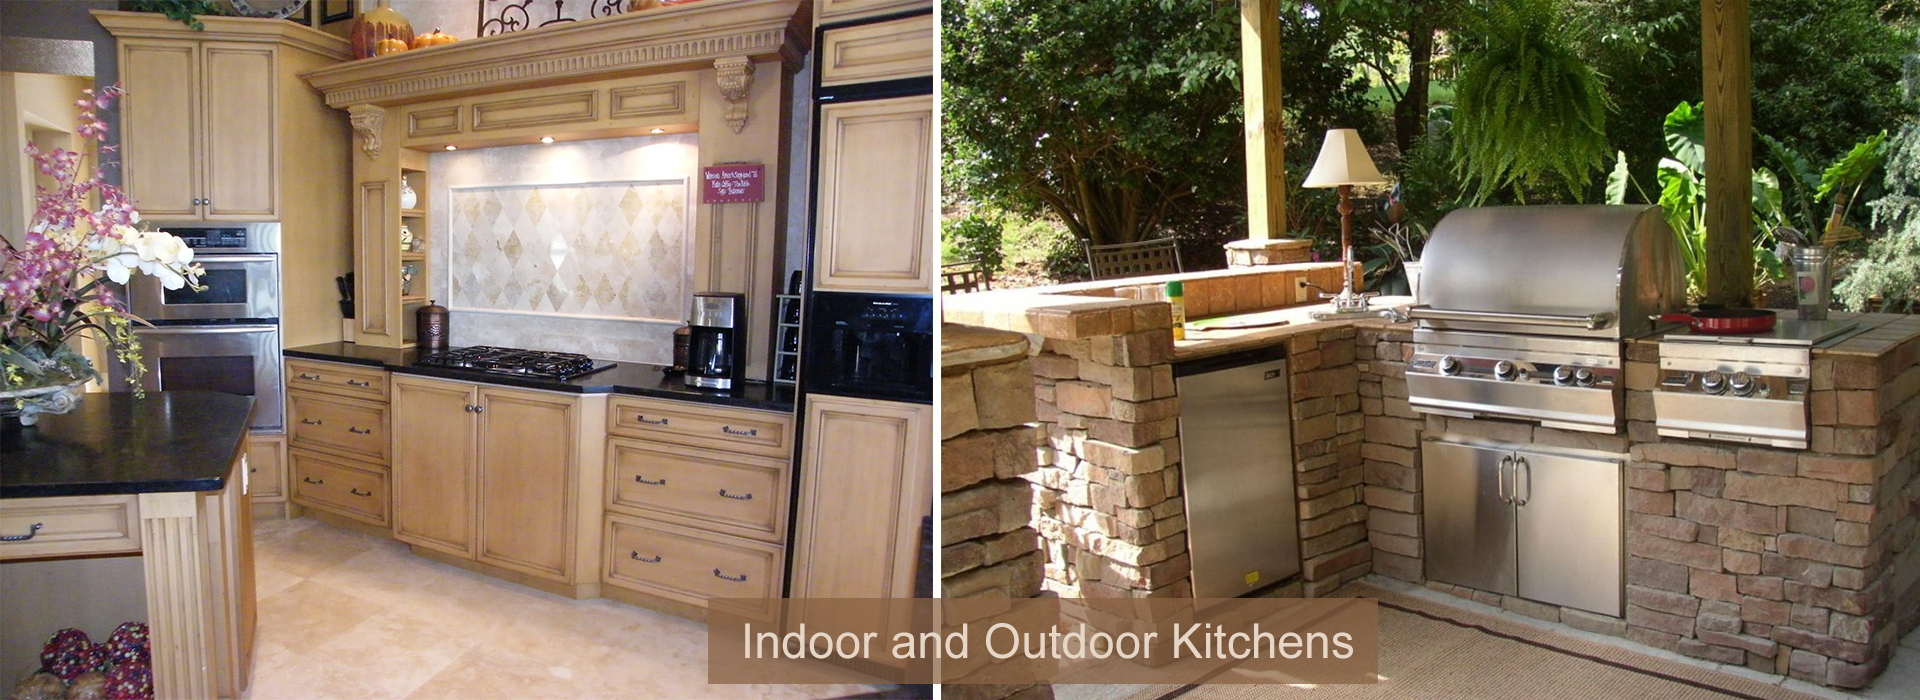 Indoor and Outdoor Kitchen Remodels